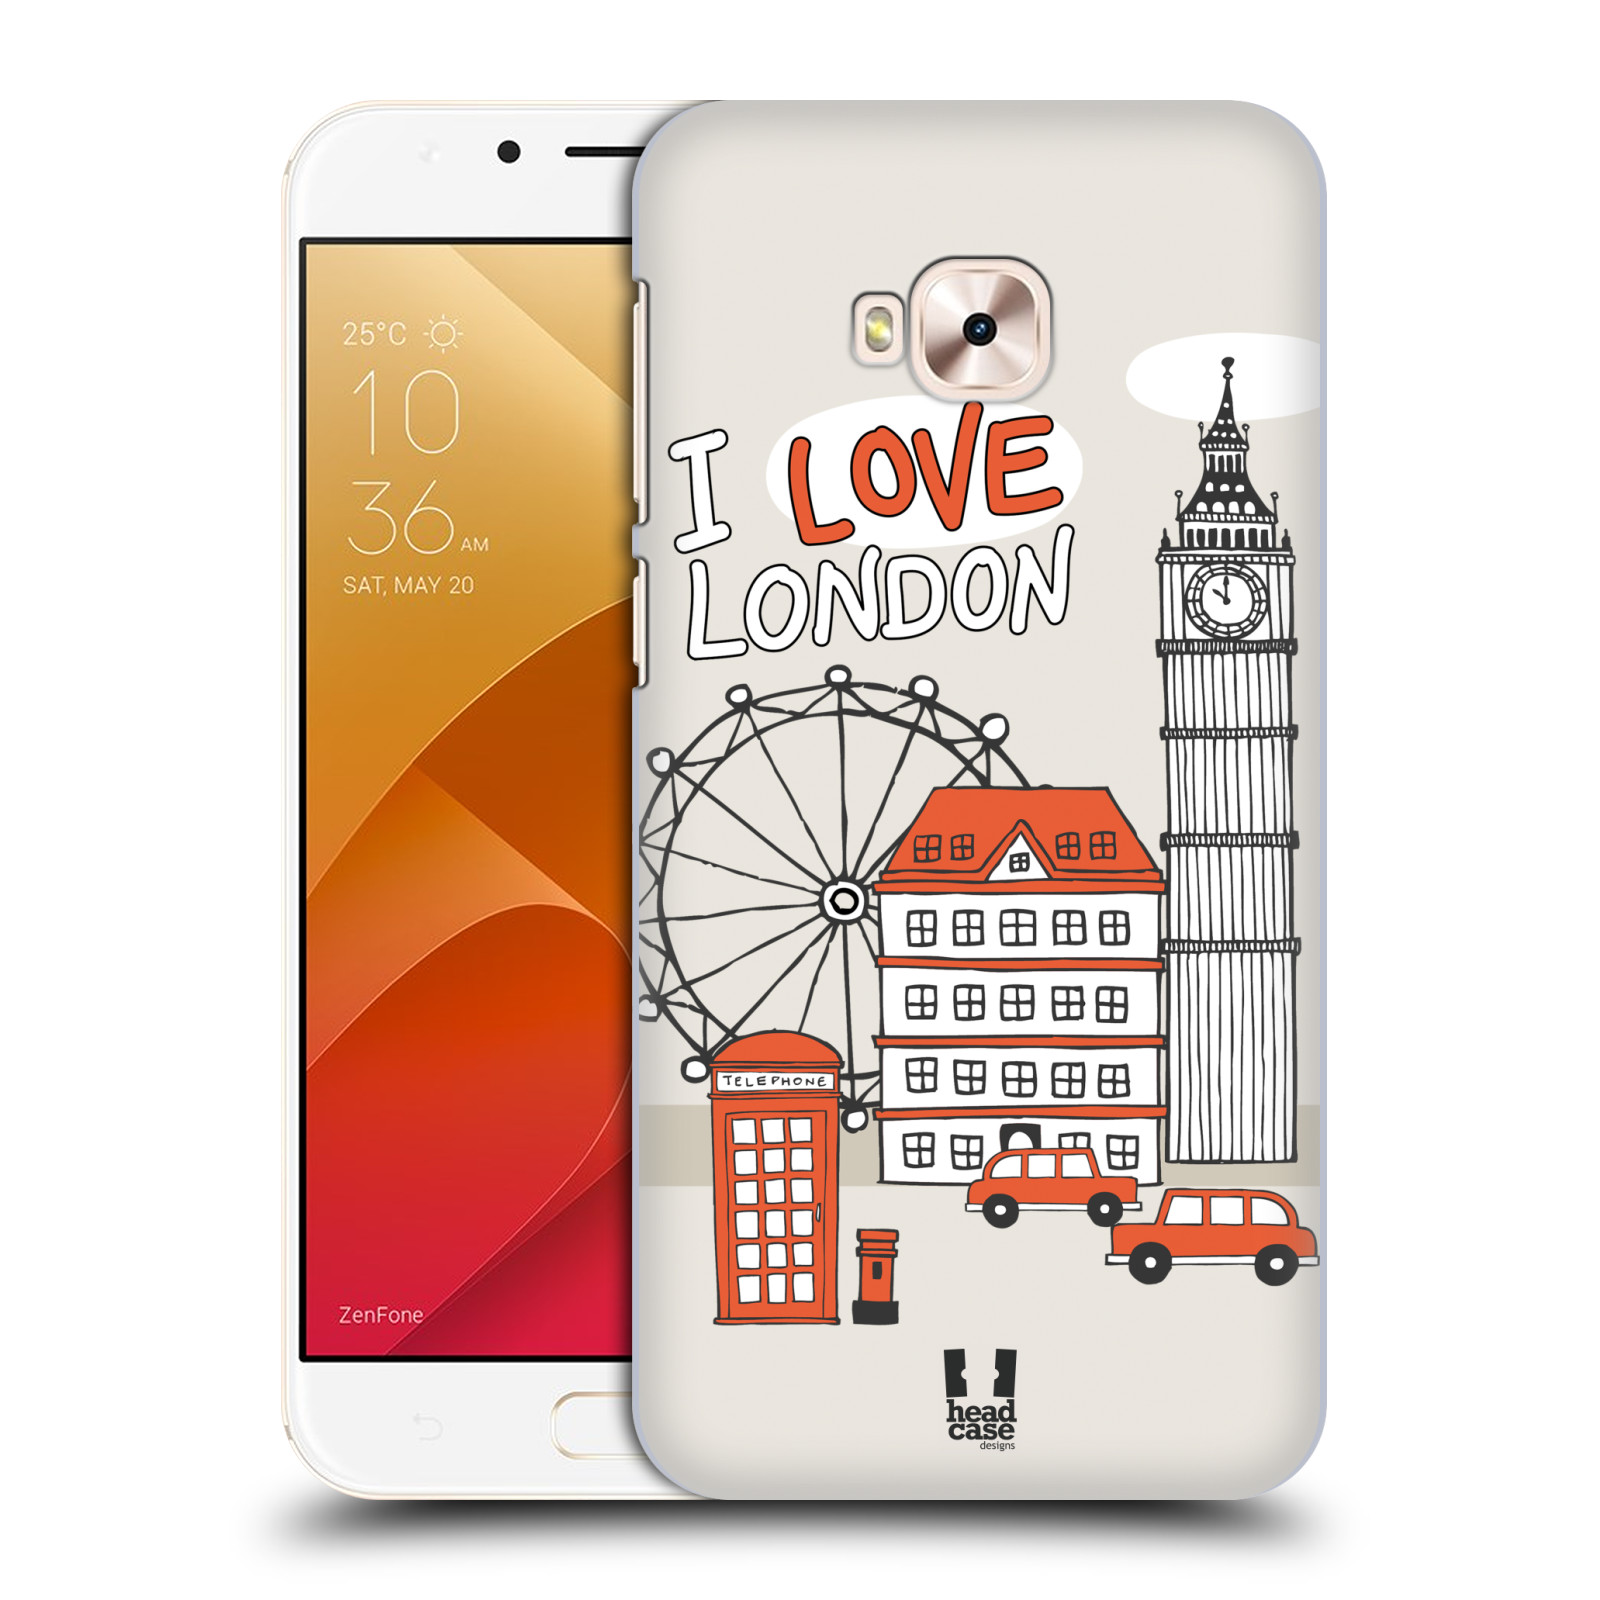 HEAD CASE plastový obal na mobil Asus Zenfone 4 Selfie Pro ZD552KL vzor Kreslená městečka ČERVENÁ, Anglie, Londýn, I LOVE LONDON